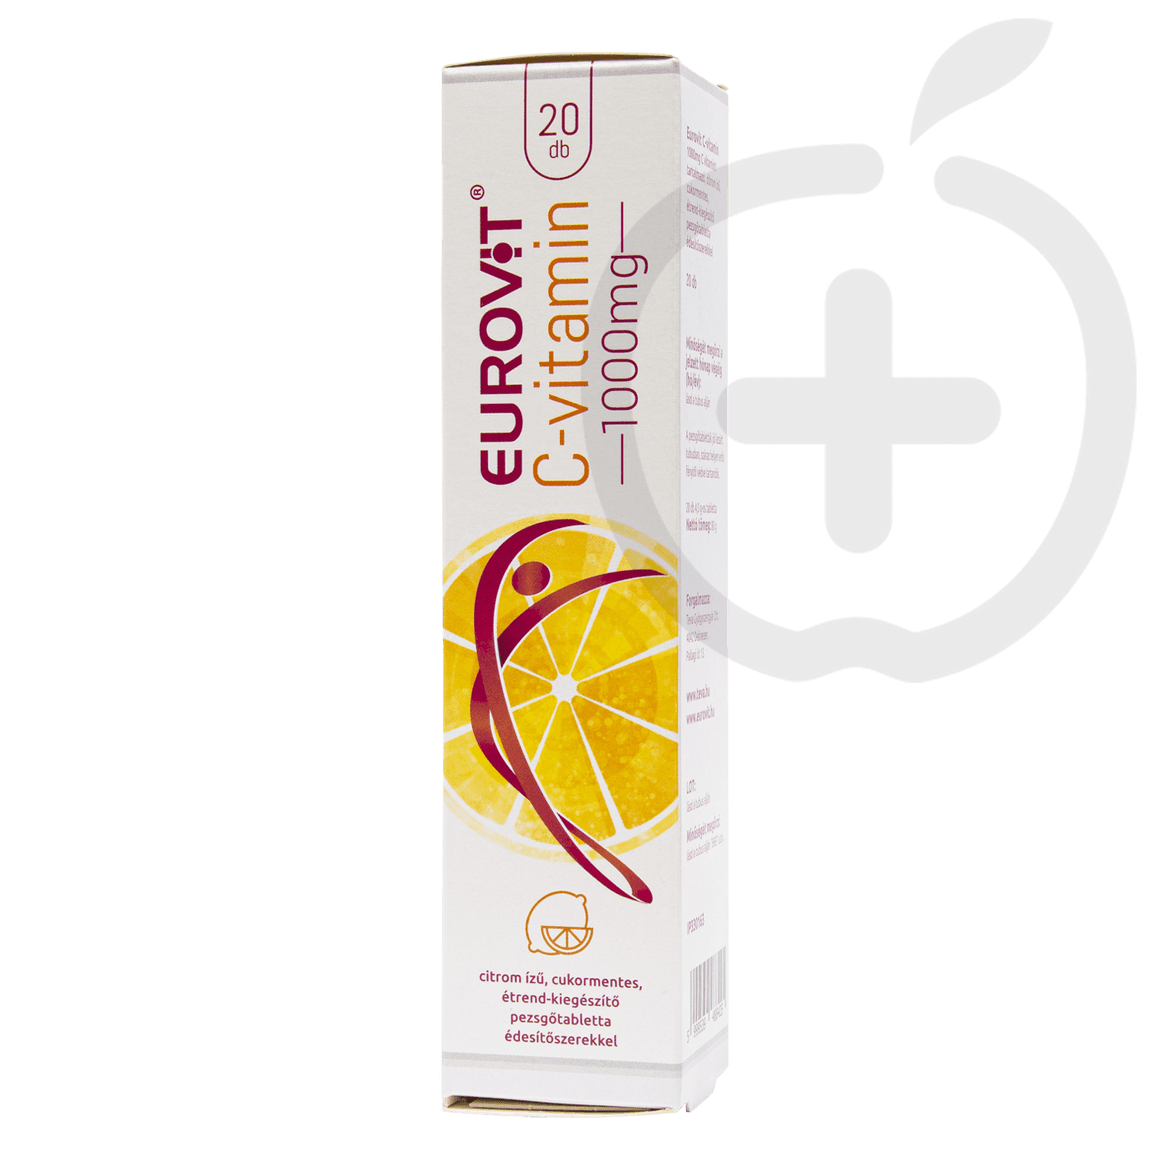 Eurovit C-vitamin 1000 mg citrom ízű, cukormentes, étrend-kiegészítő pezsgőtabletta